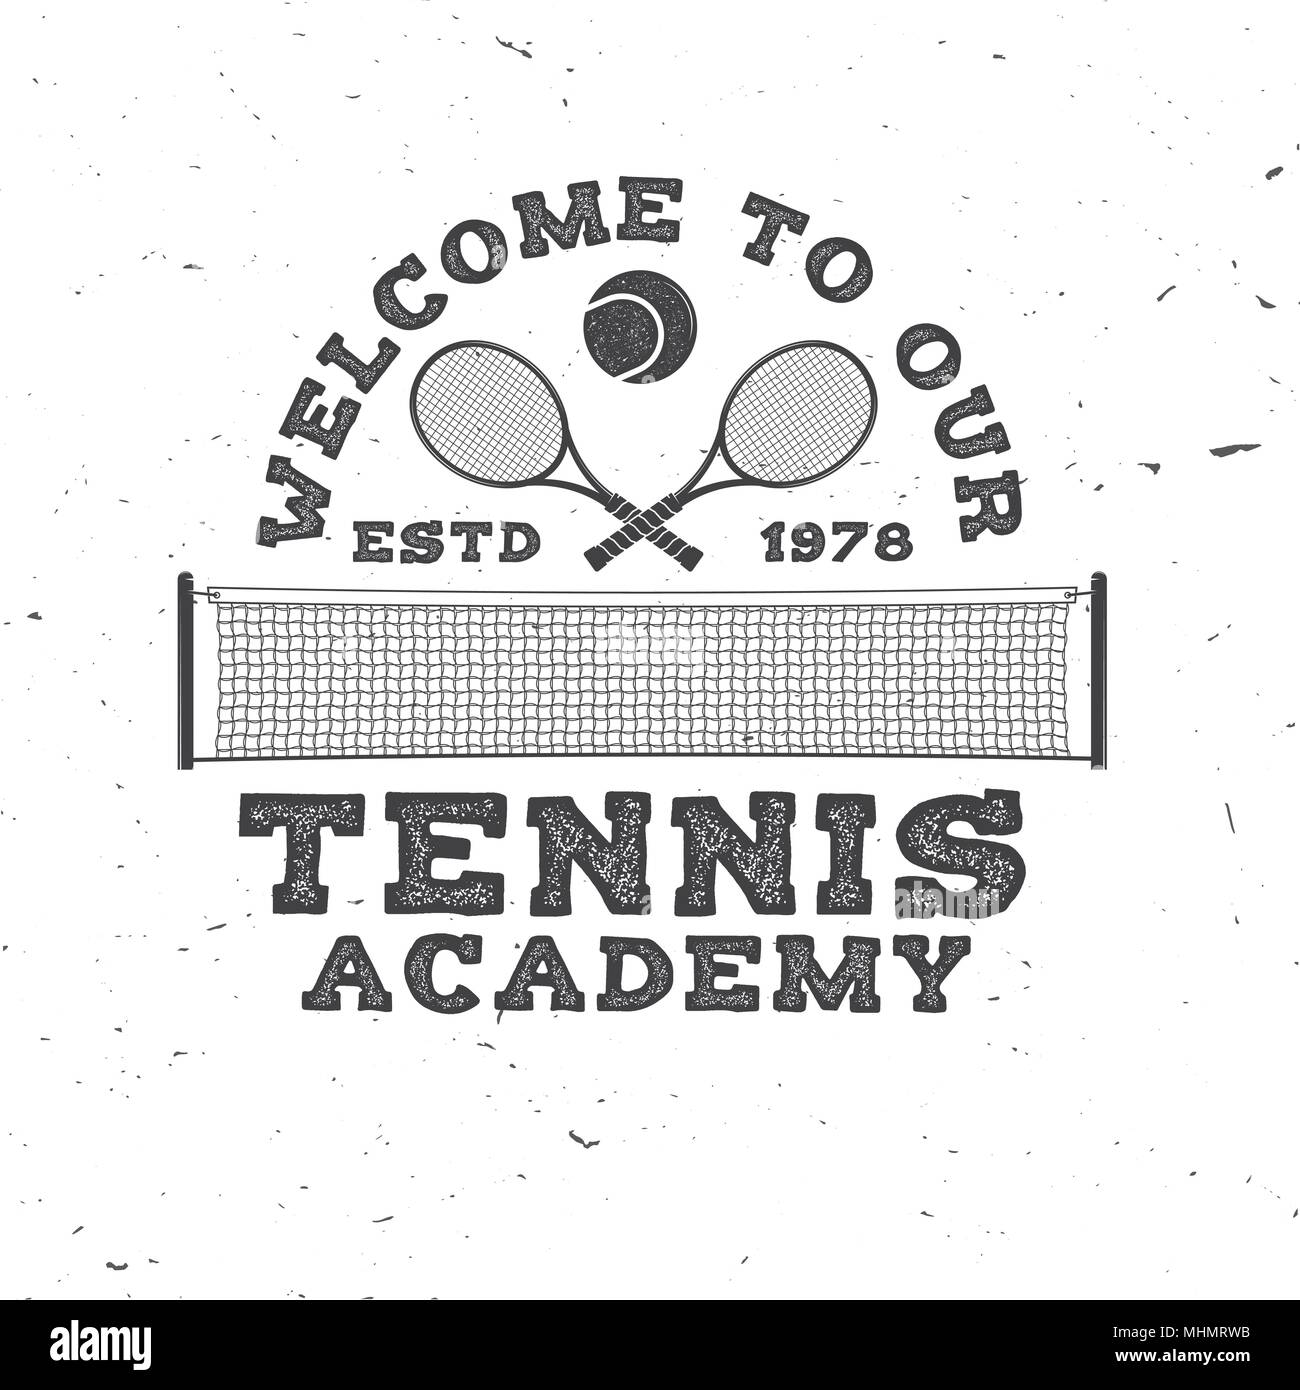 Bienvenue à notre école de Tennis. Vector illustration. Concept pour chemise, imprimer, stamp ou tee. Typographie vintage design avec balle de tennis et net silhoue Illustration de Vecteur